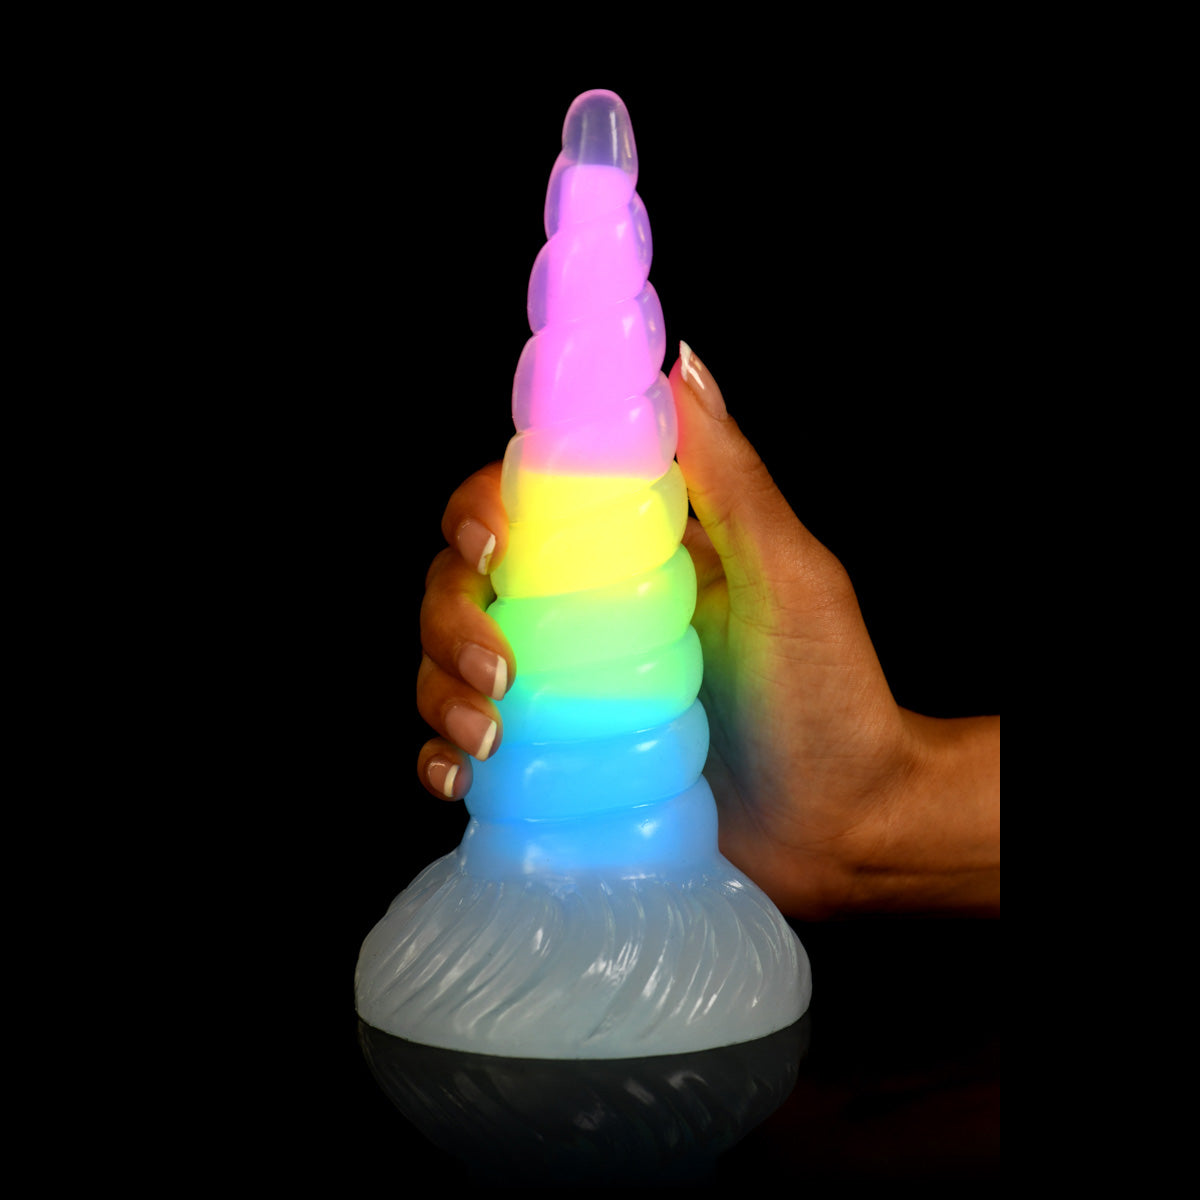 Creature Cocks - Glow-in-the-Dark Rainbow Silicone Dildo | 7.5 inches